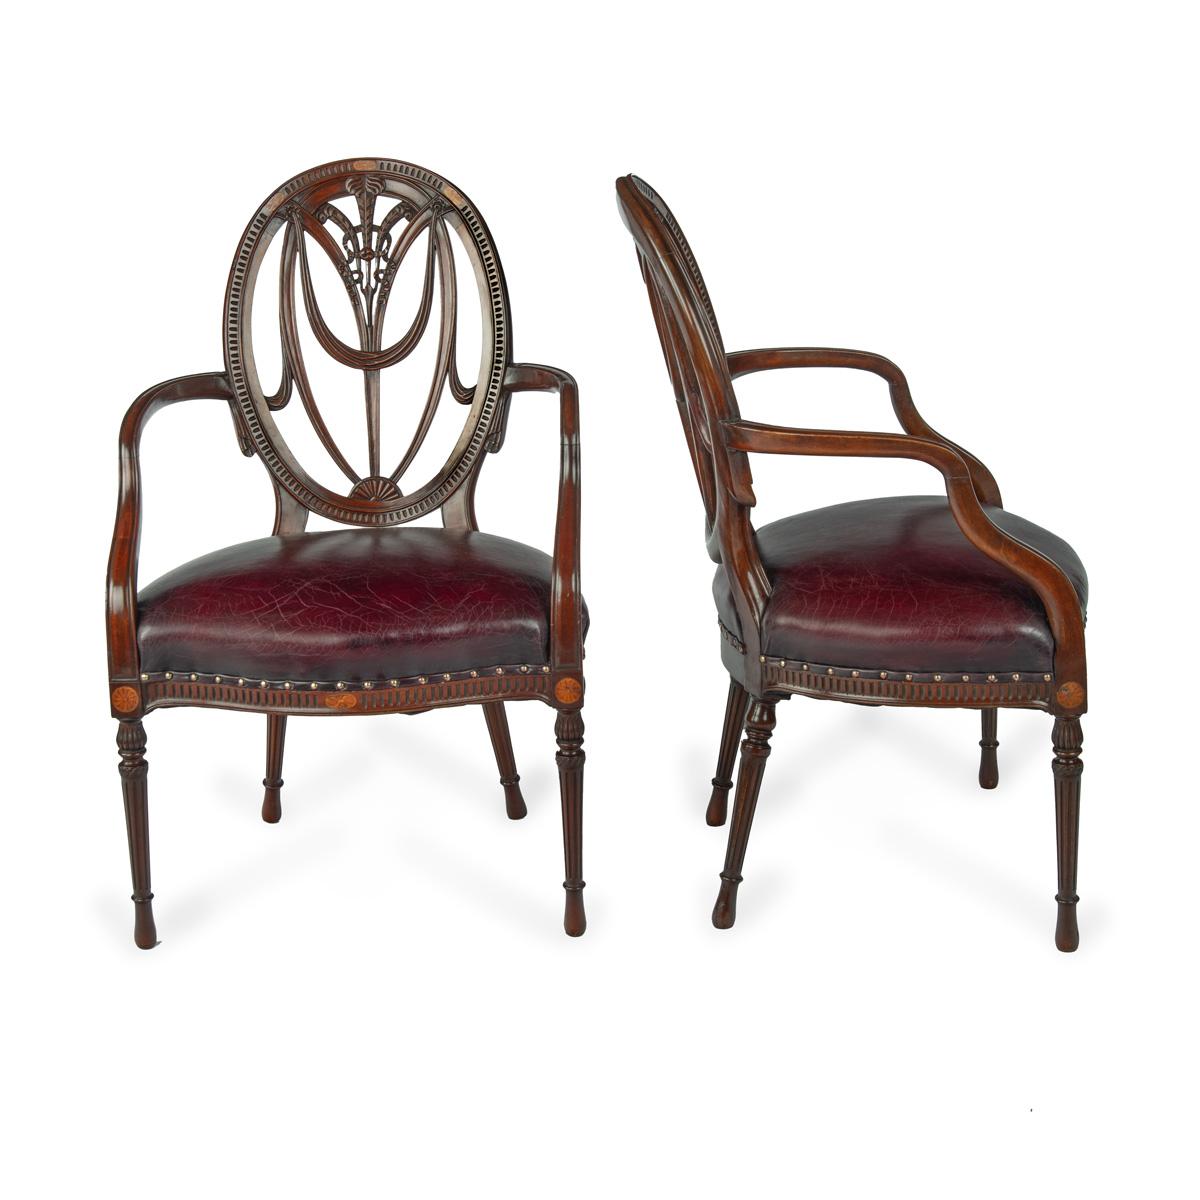 Ein Paar Mahagoni-Sessel im Hepplewhite-Stil, jeder mit einer ovalen Rückenlehne, die Prince of Wales-Federn mit Drapierungen und gebundenen Bändern umschließt, die geformten Arme und der serpentinenförmige Sitz auf gedrechselten, spitz zulaufenden